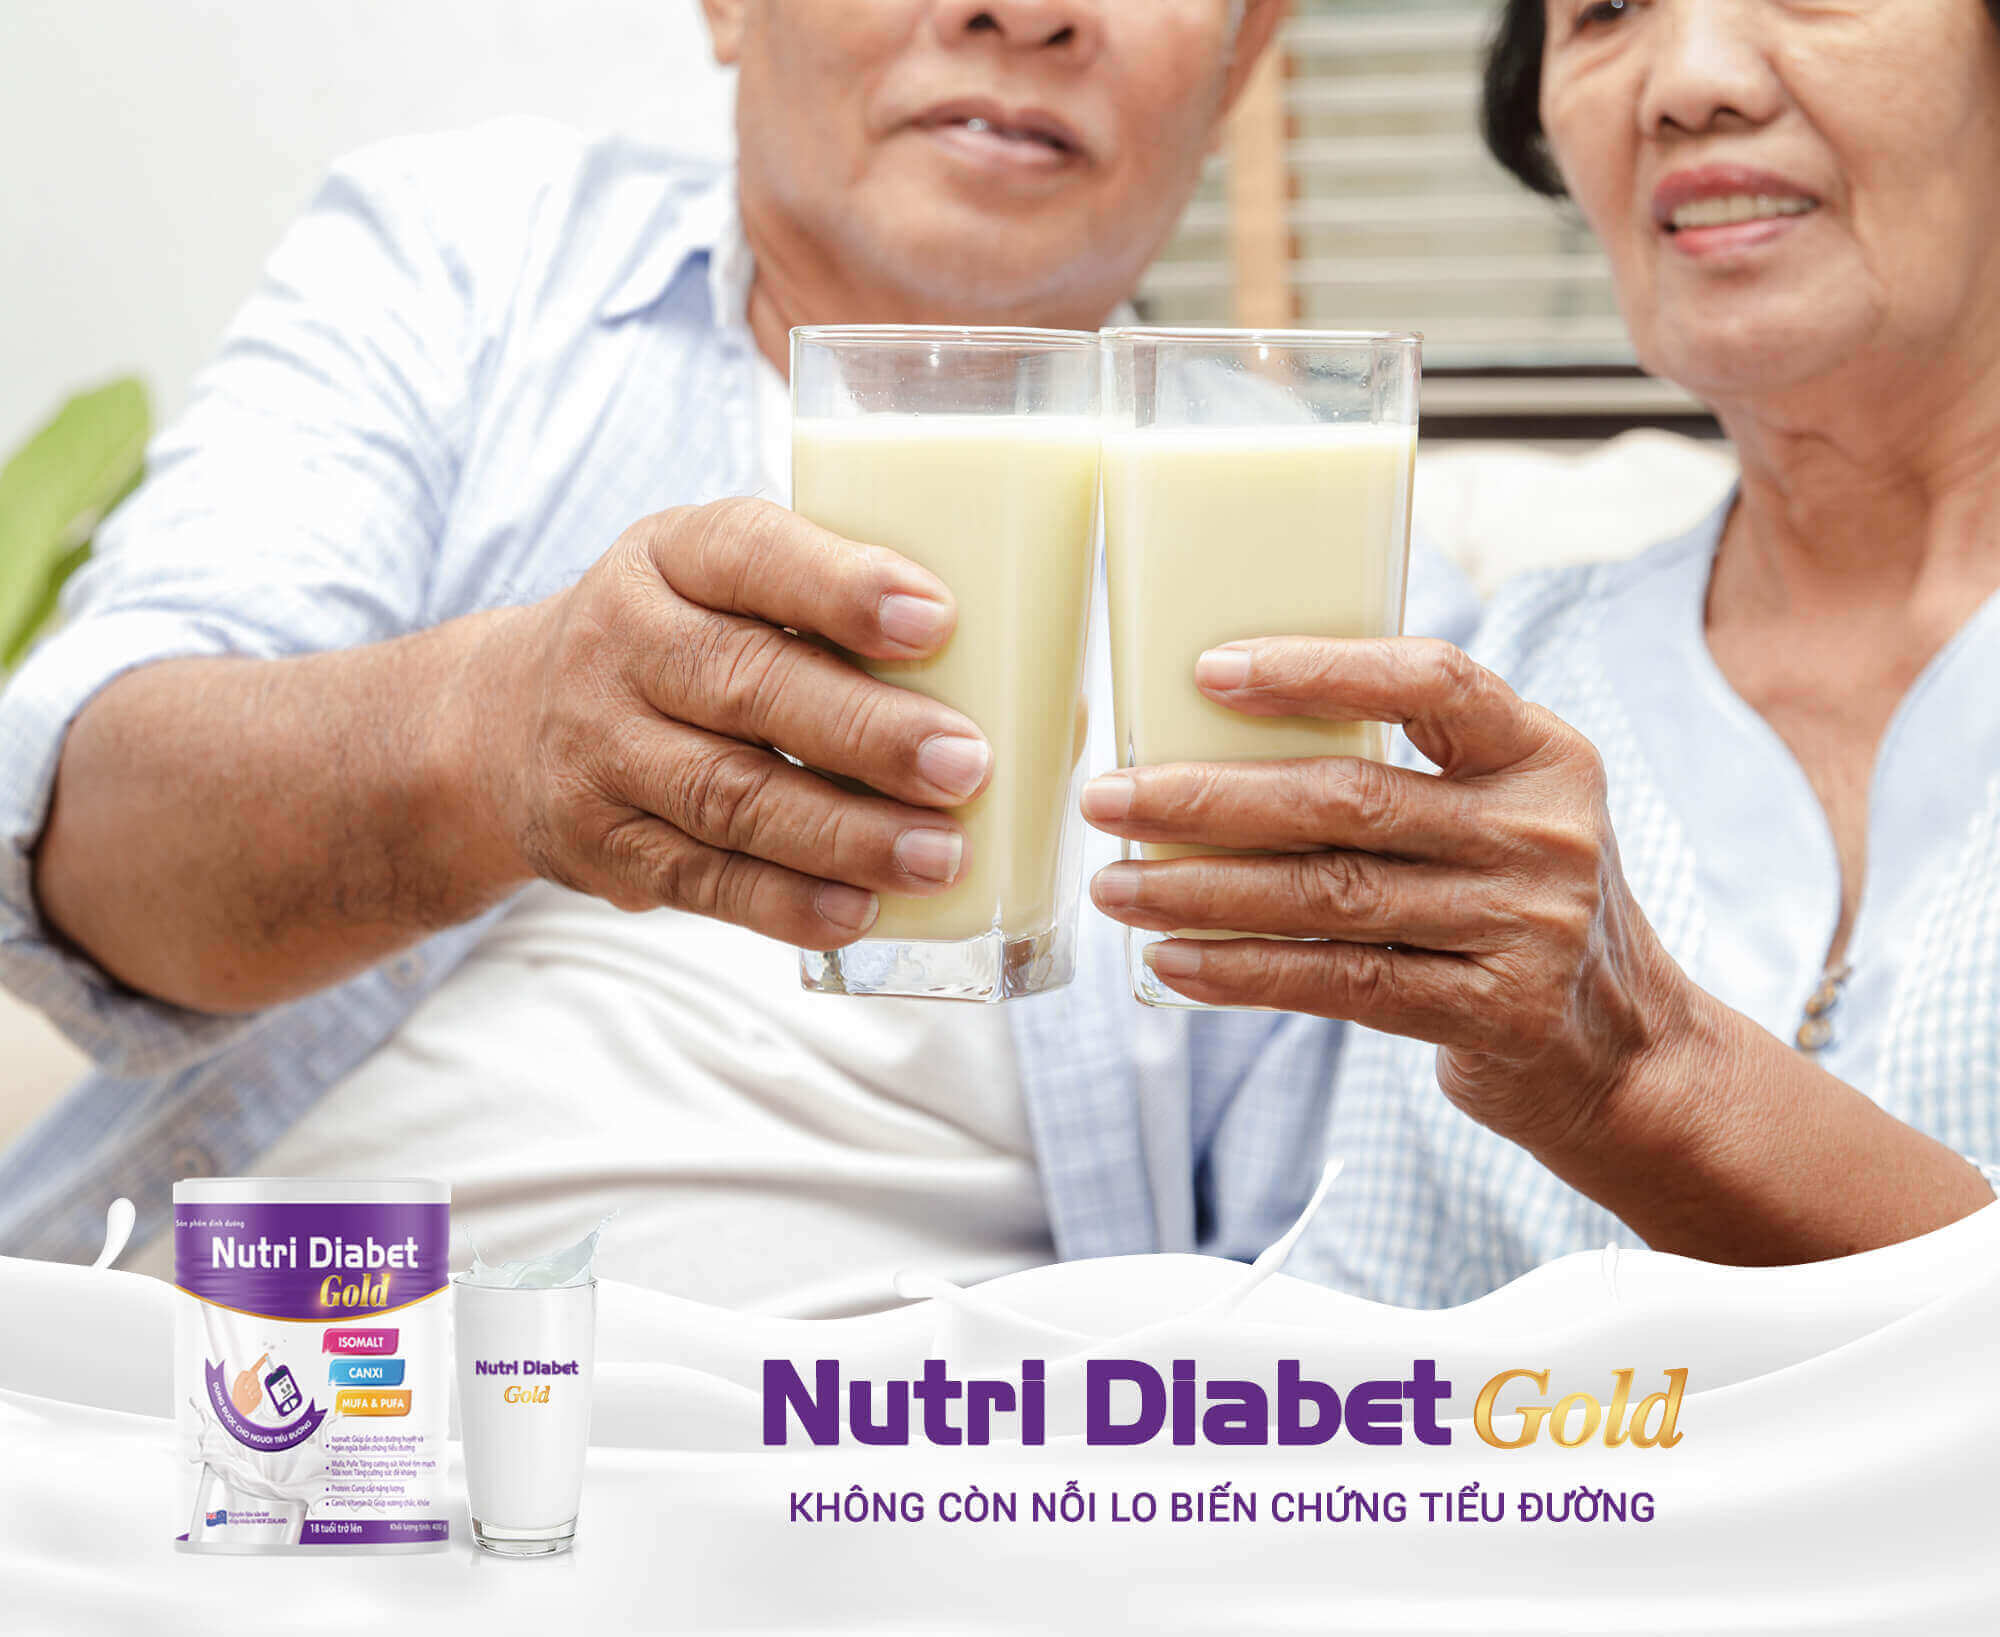 sữa dành cho người tiểu đường nutri diabet gold